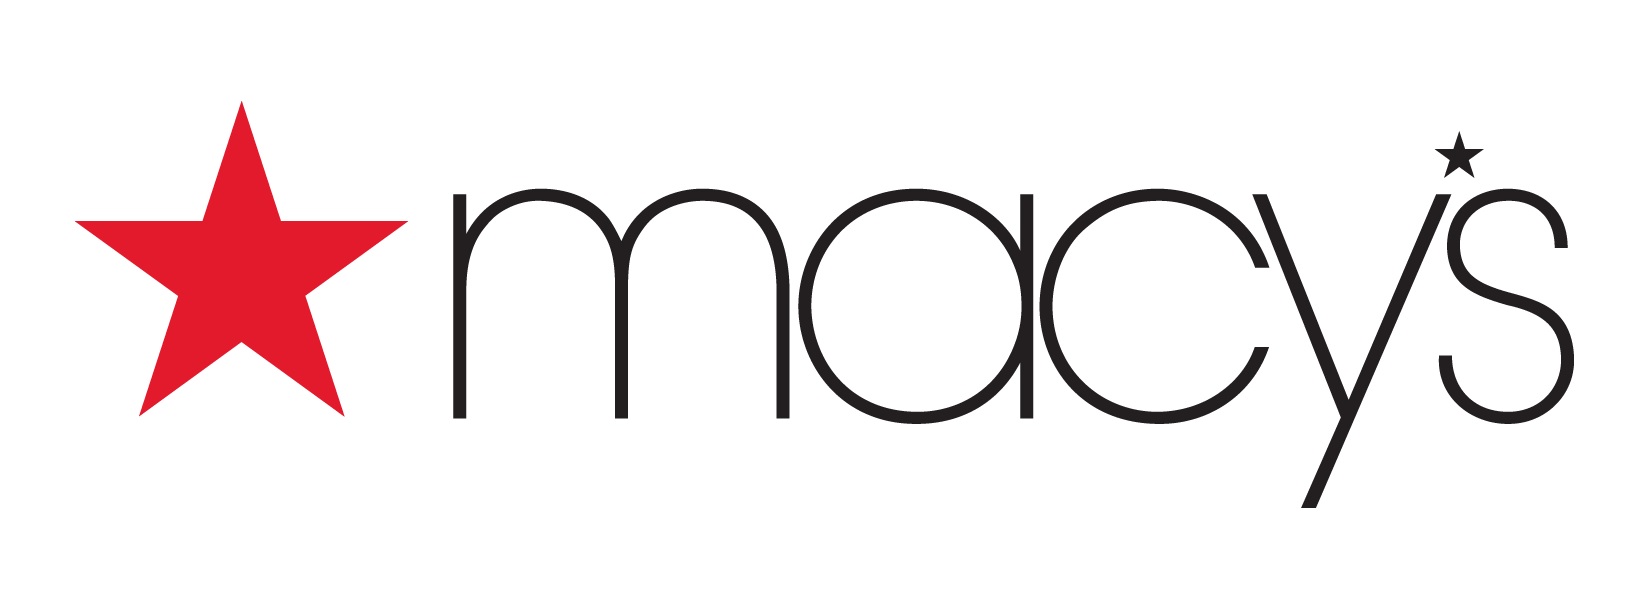 macys-logo-transparent_1446205865425_414375_ver1.0.jpg